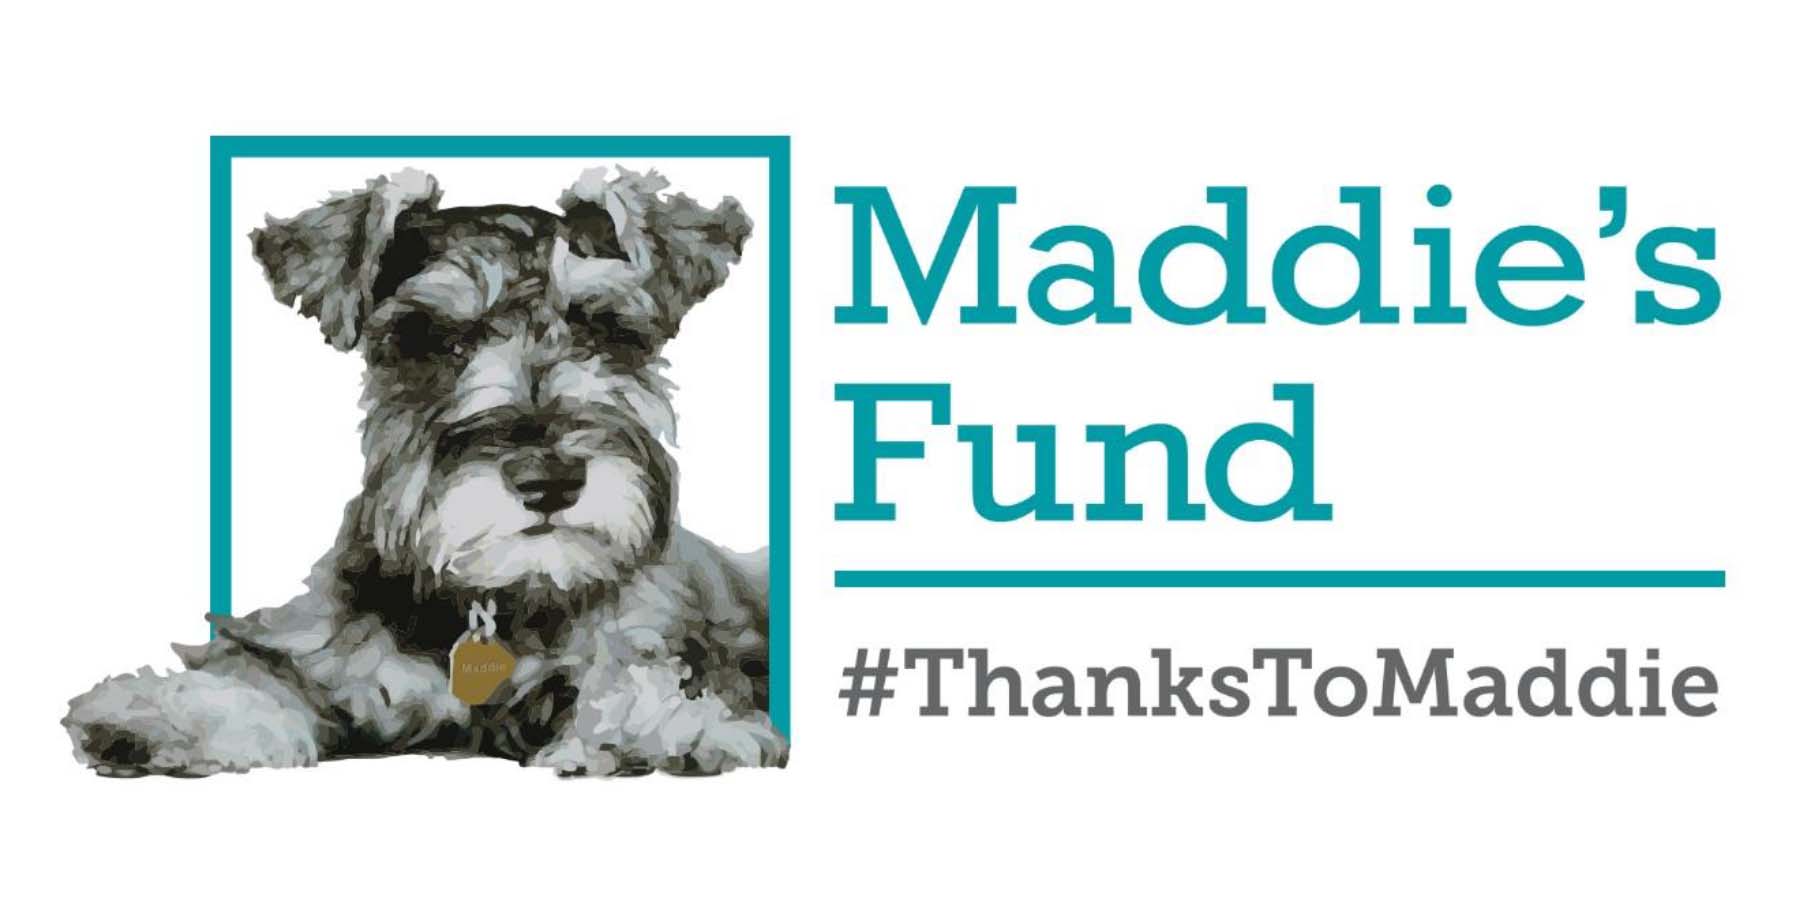 Maddie's Fund brand logo